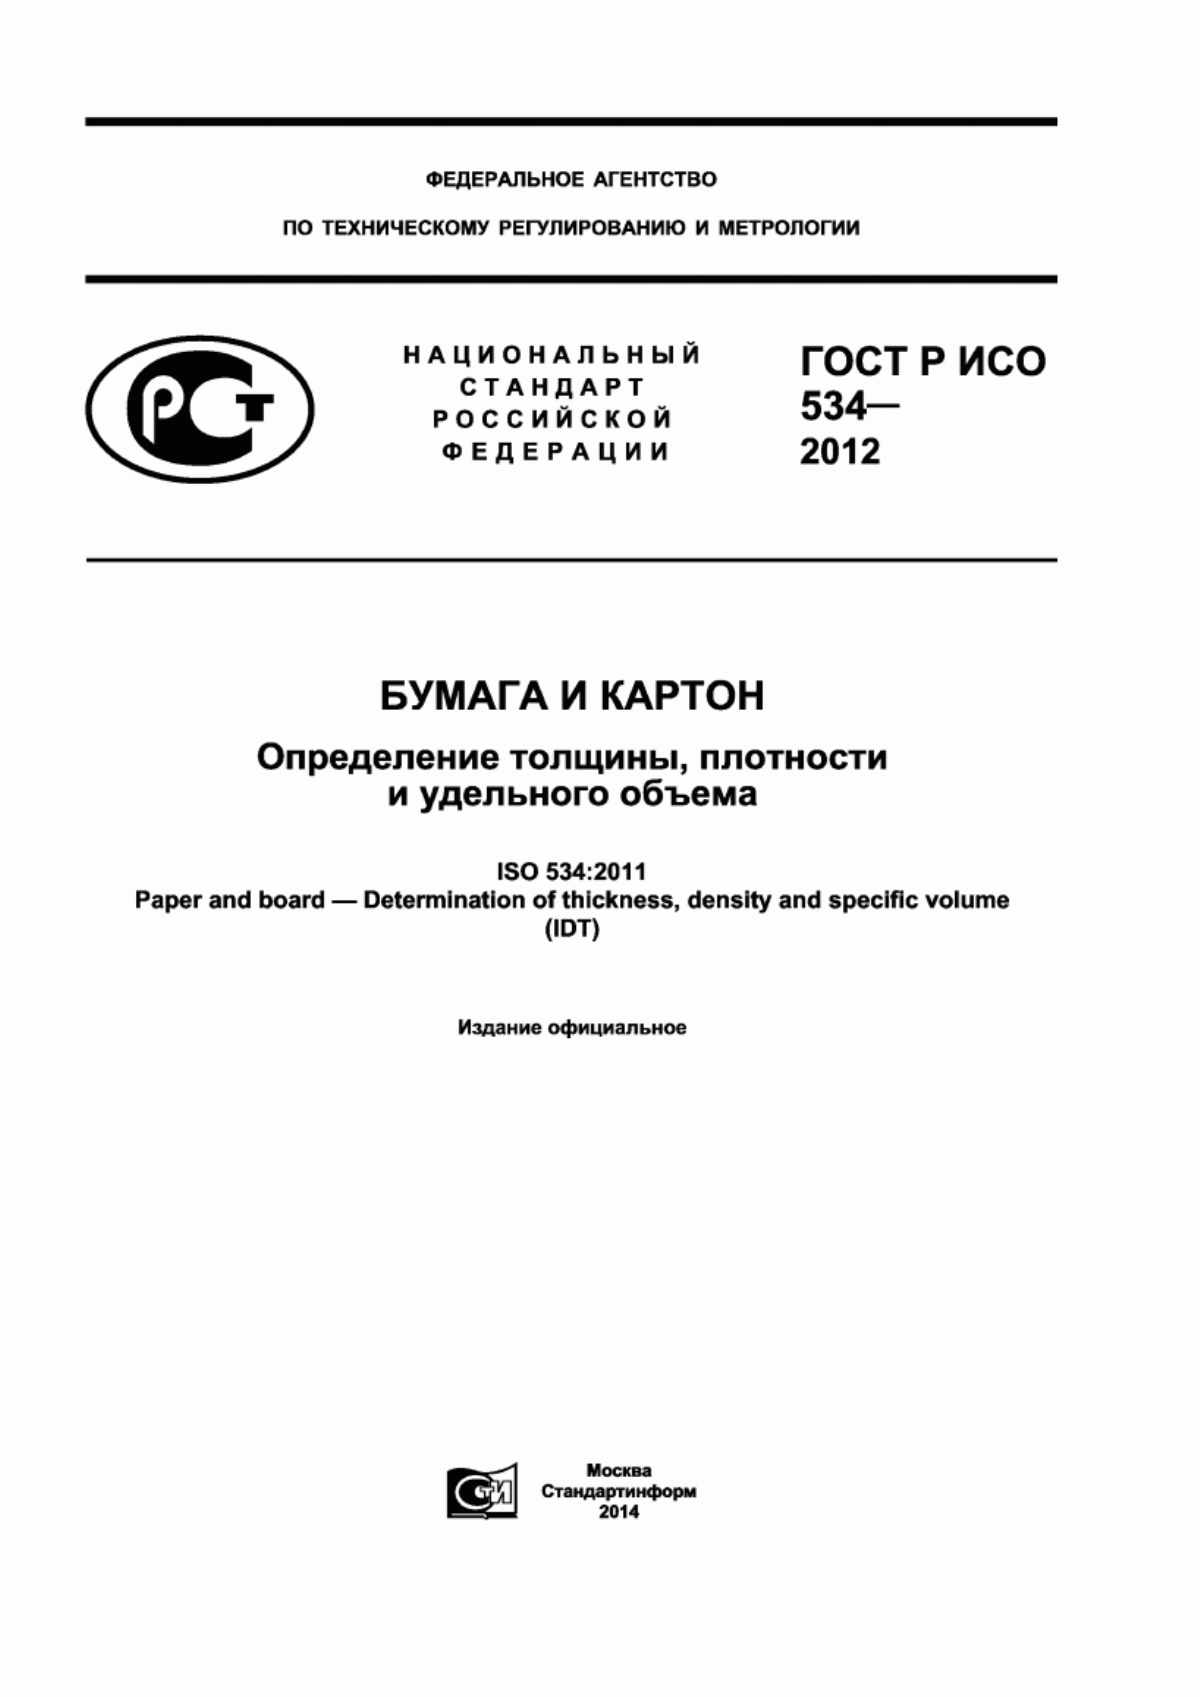 ГОСТ Р ИСО 534-2012 Бумага и картон. Определение толщины, плотности и удельного объема